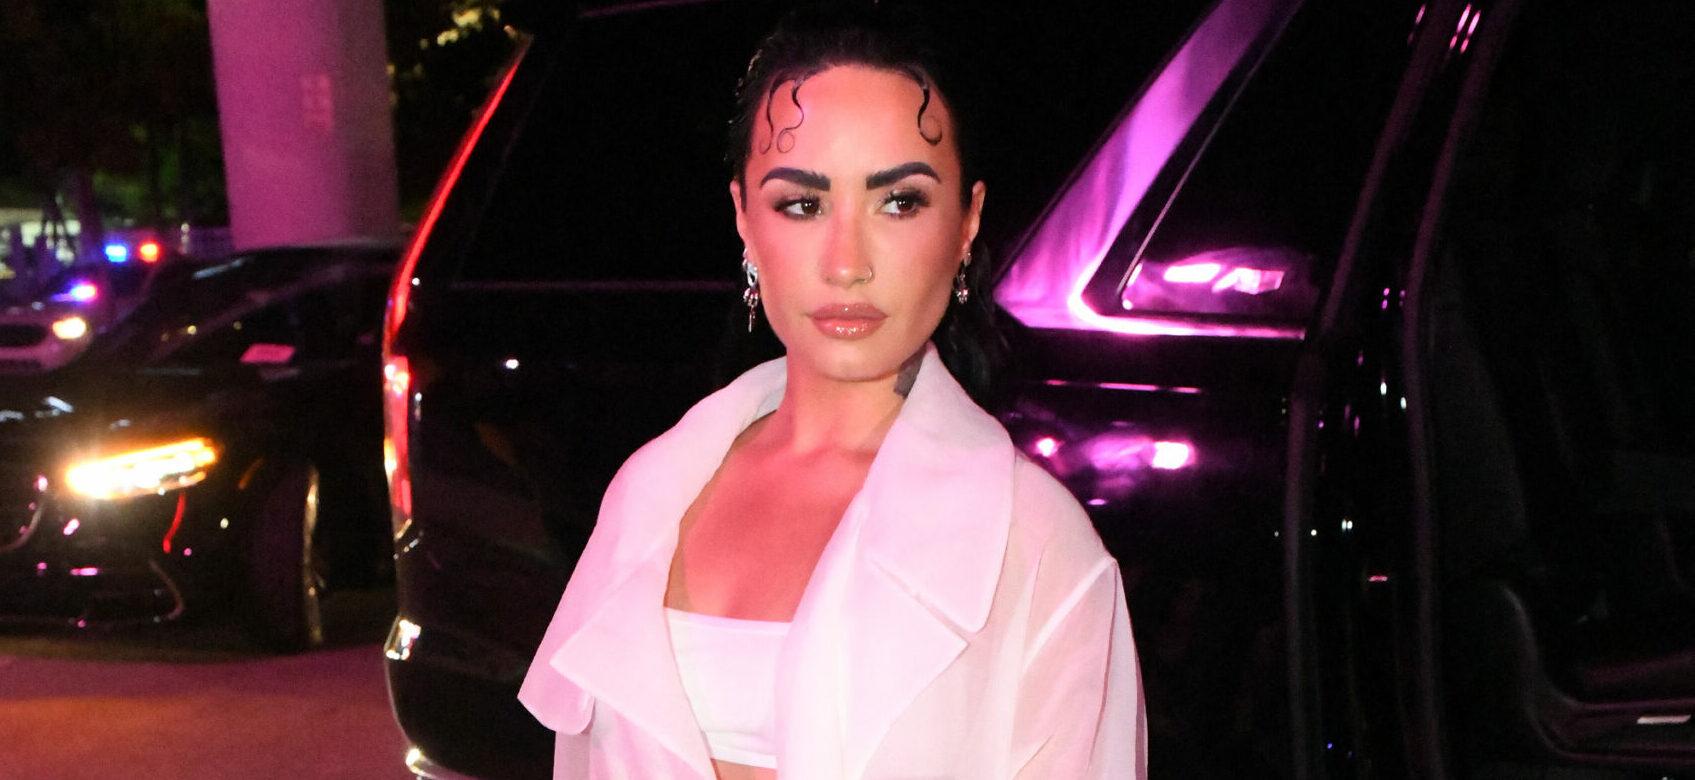 Demi Lovato arrives at the Hugo Boss fashion show in Miami